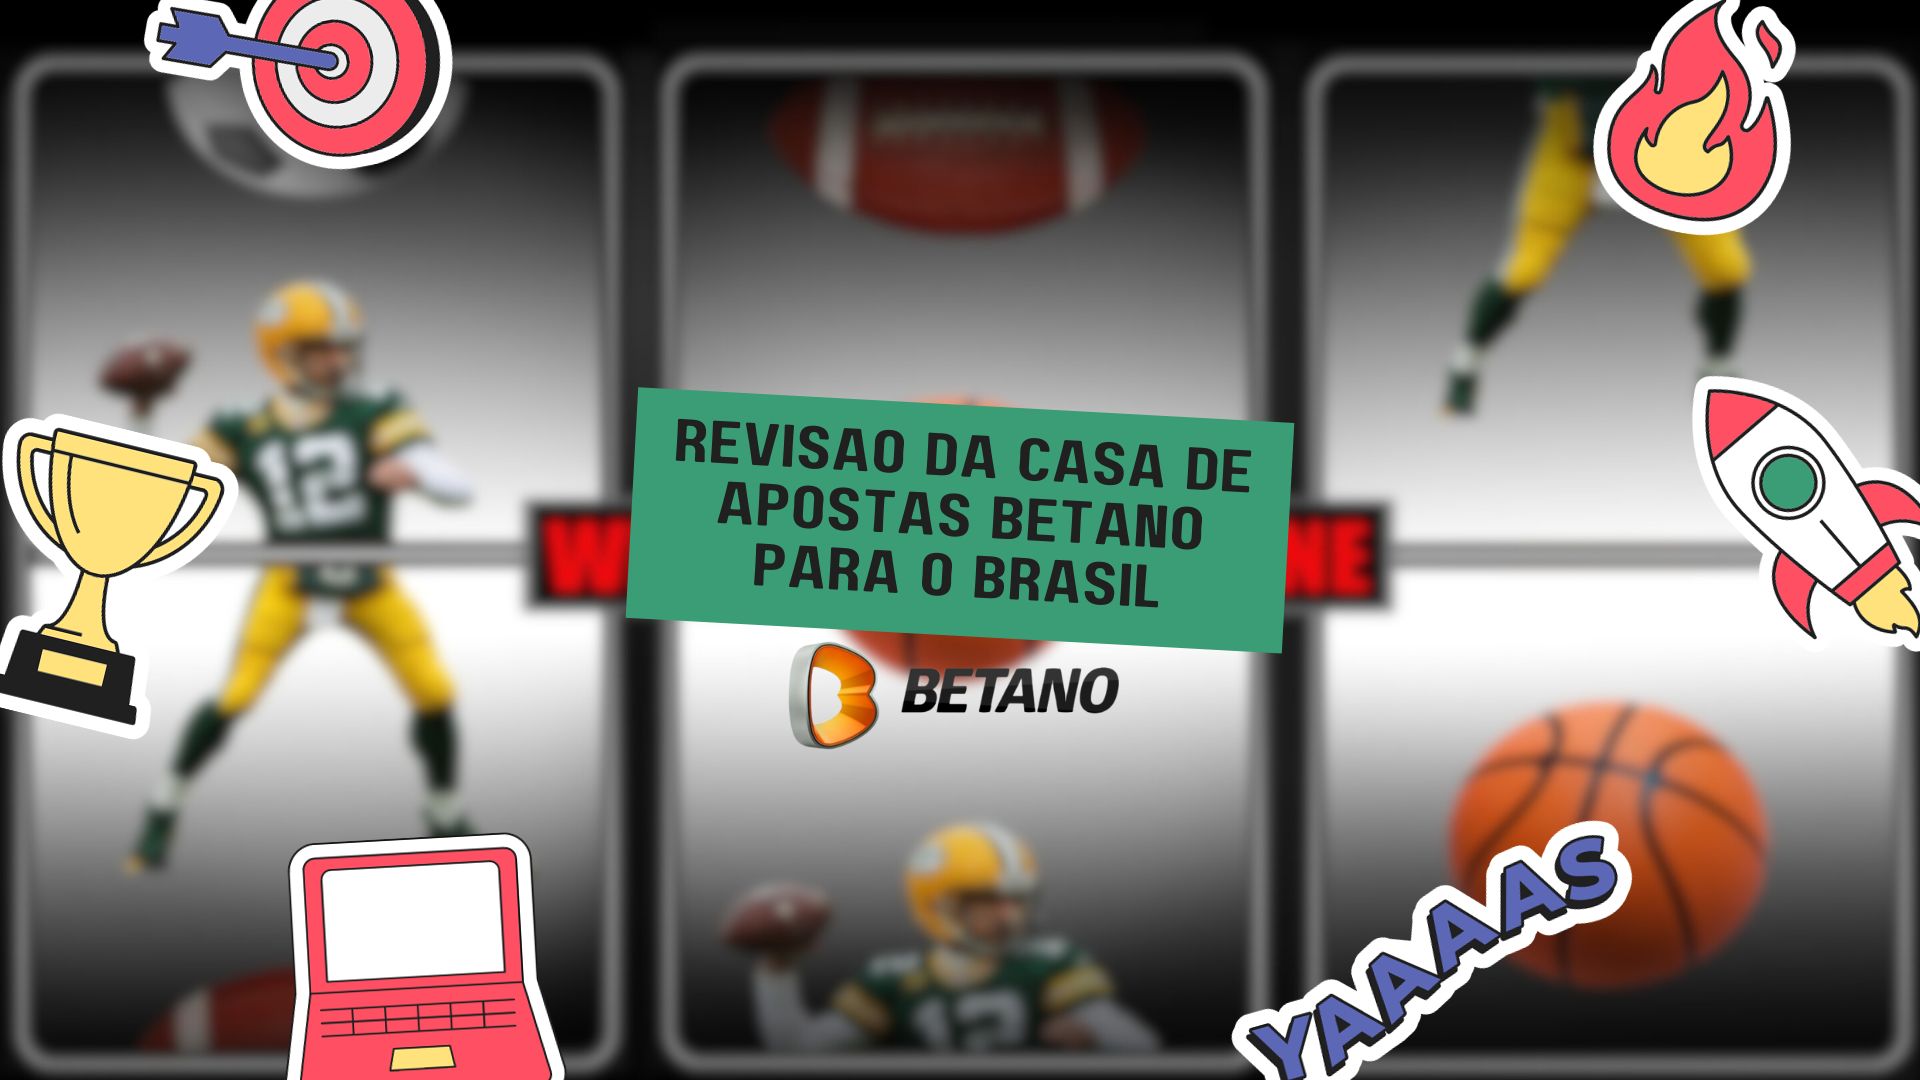 Revisão da casa de apostas Betano para o Brasil